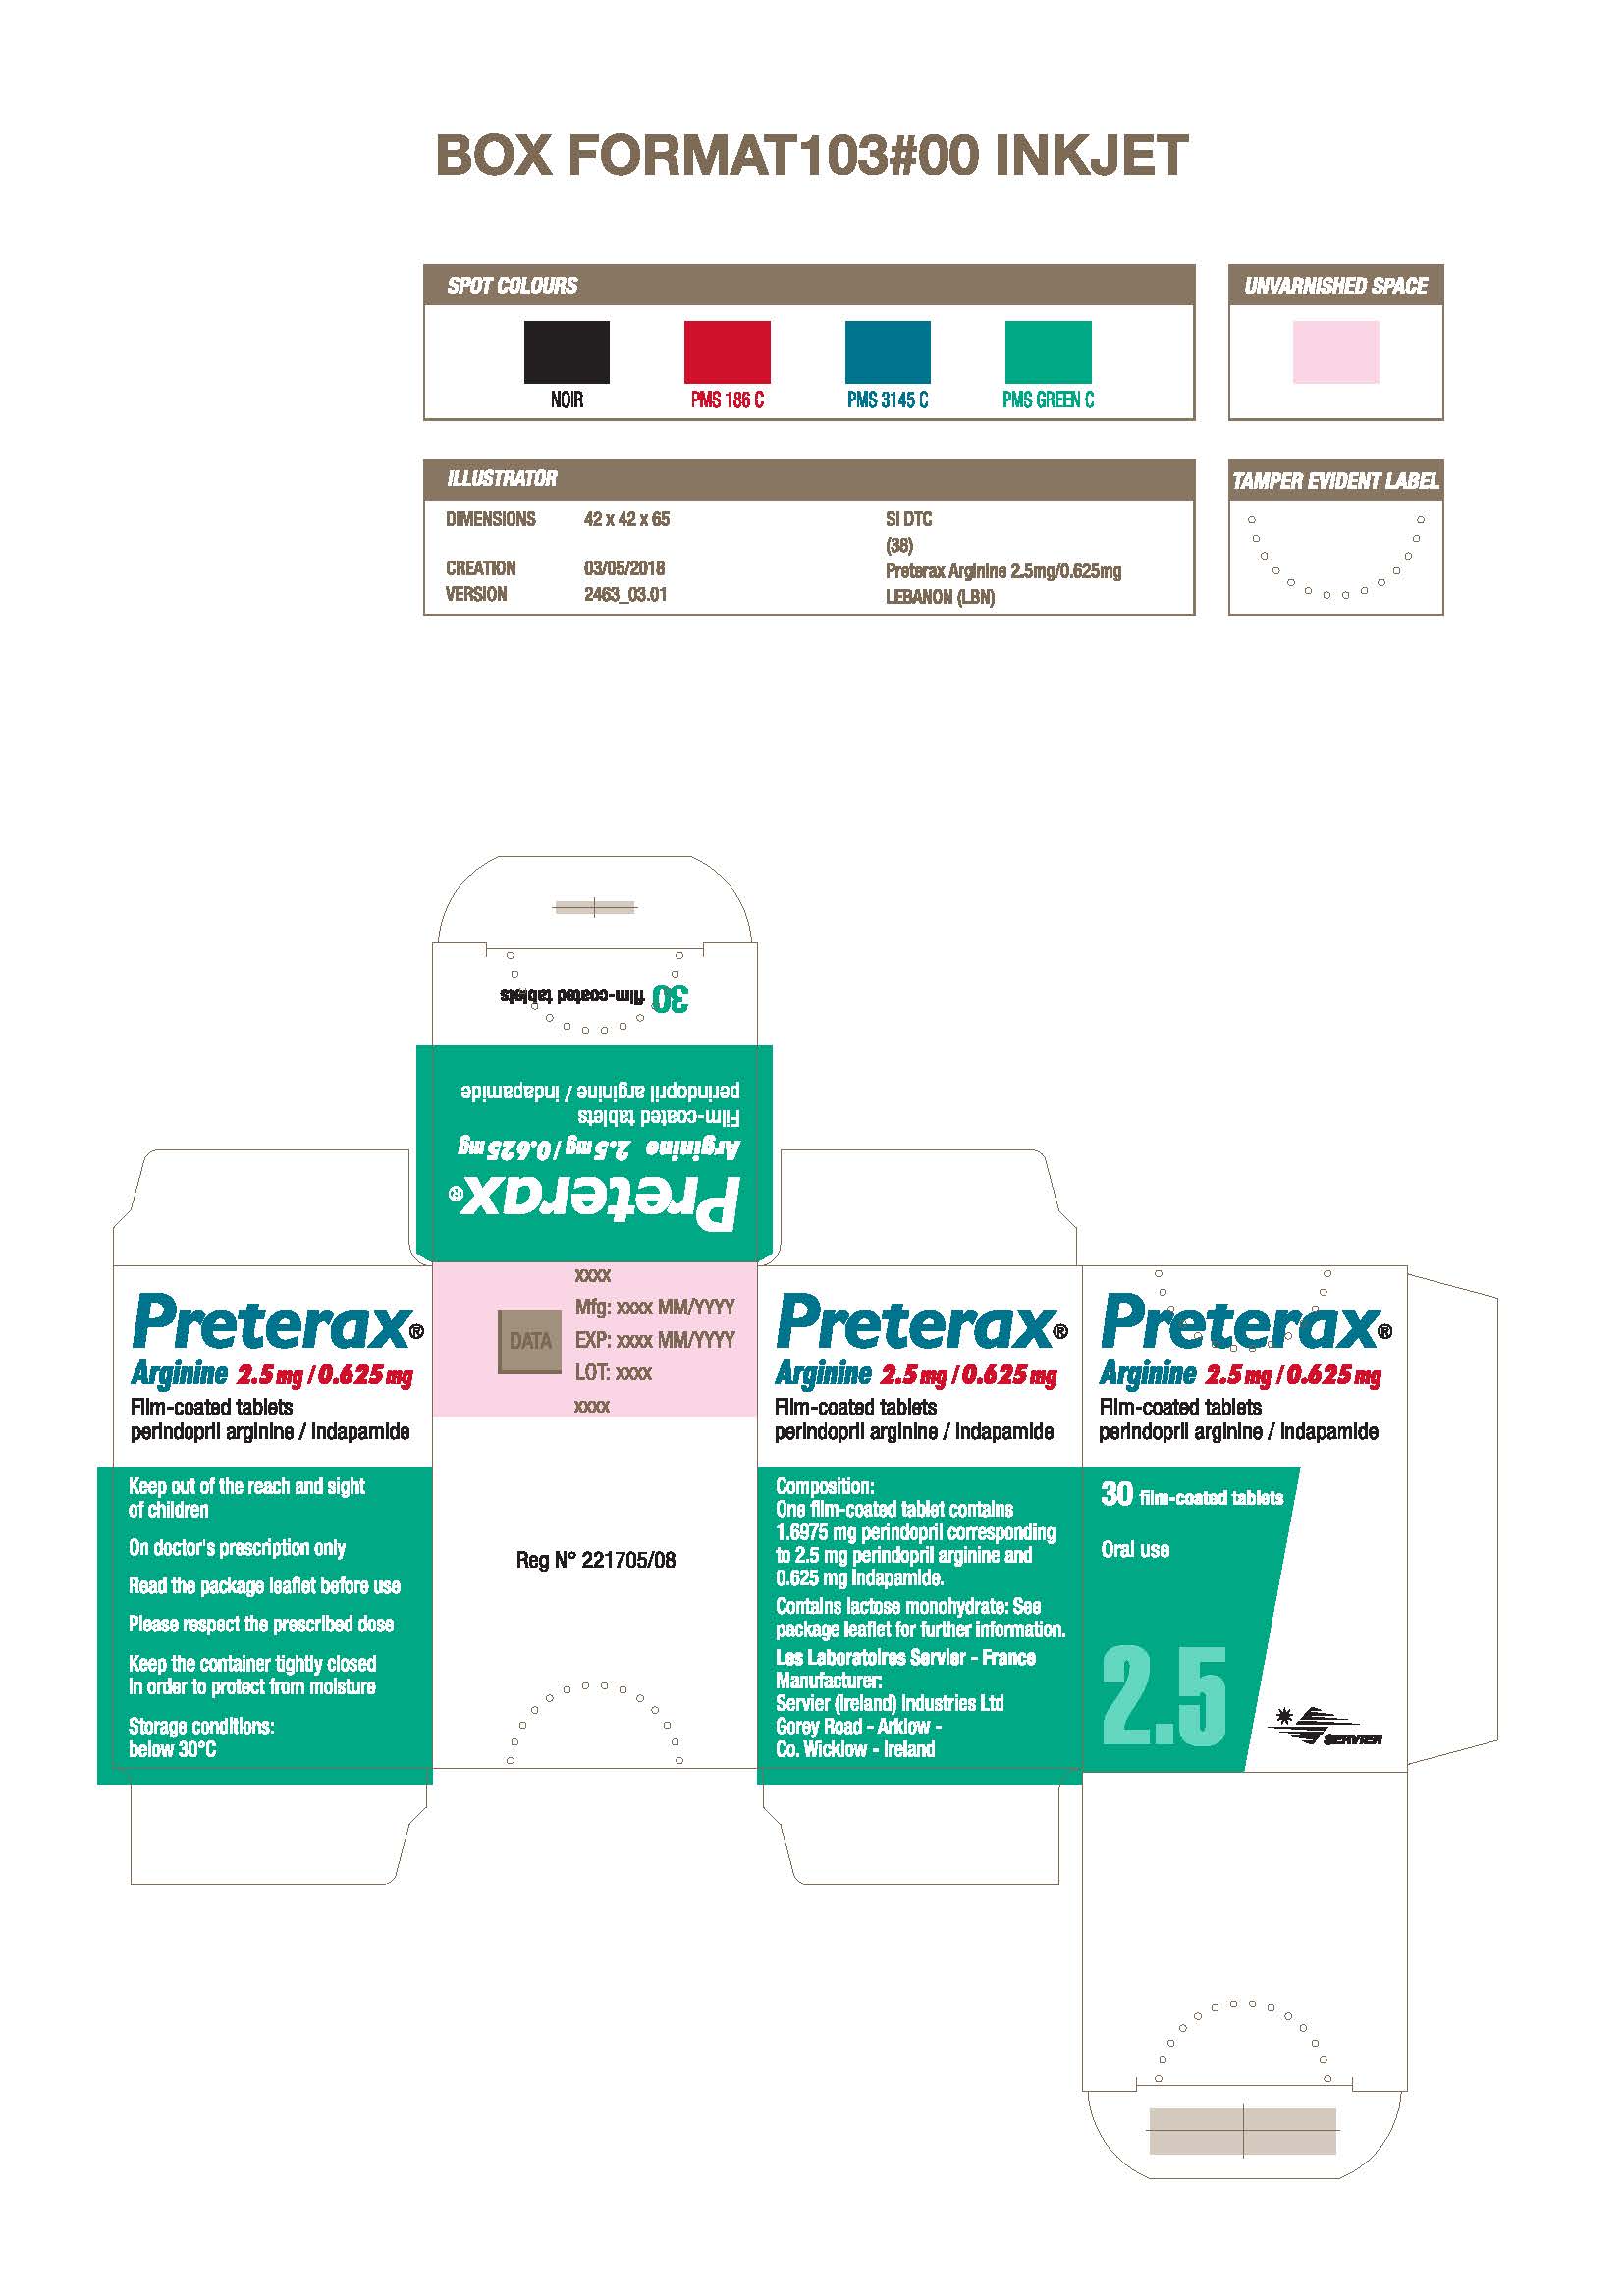 Preterax Arginine